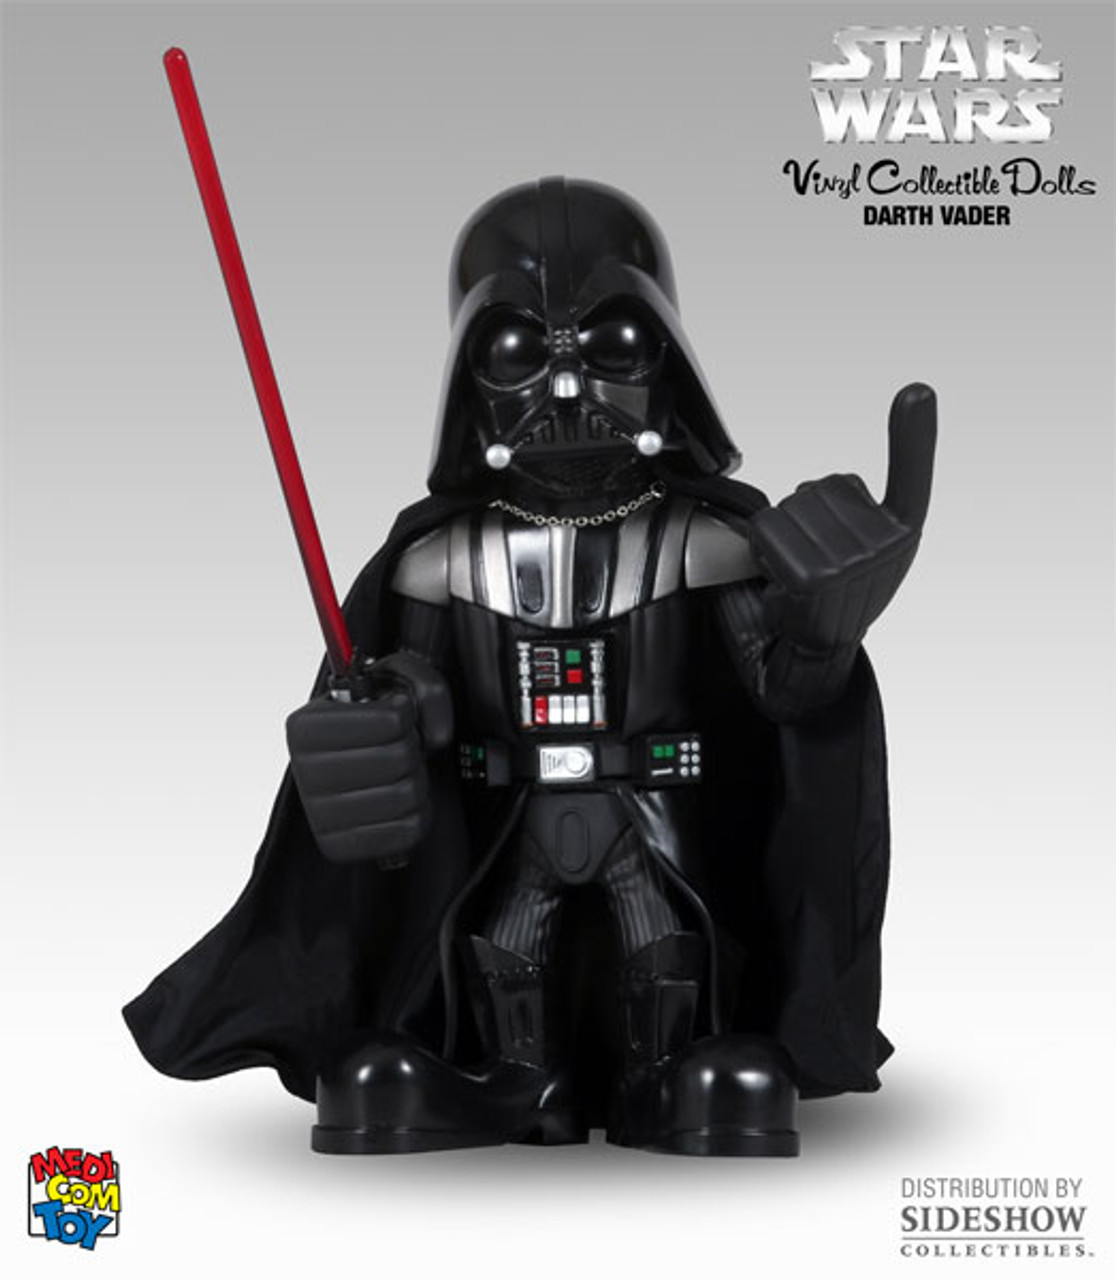 Medicom Star Wars Darth Vader VCD